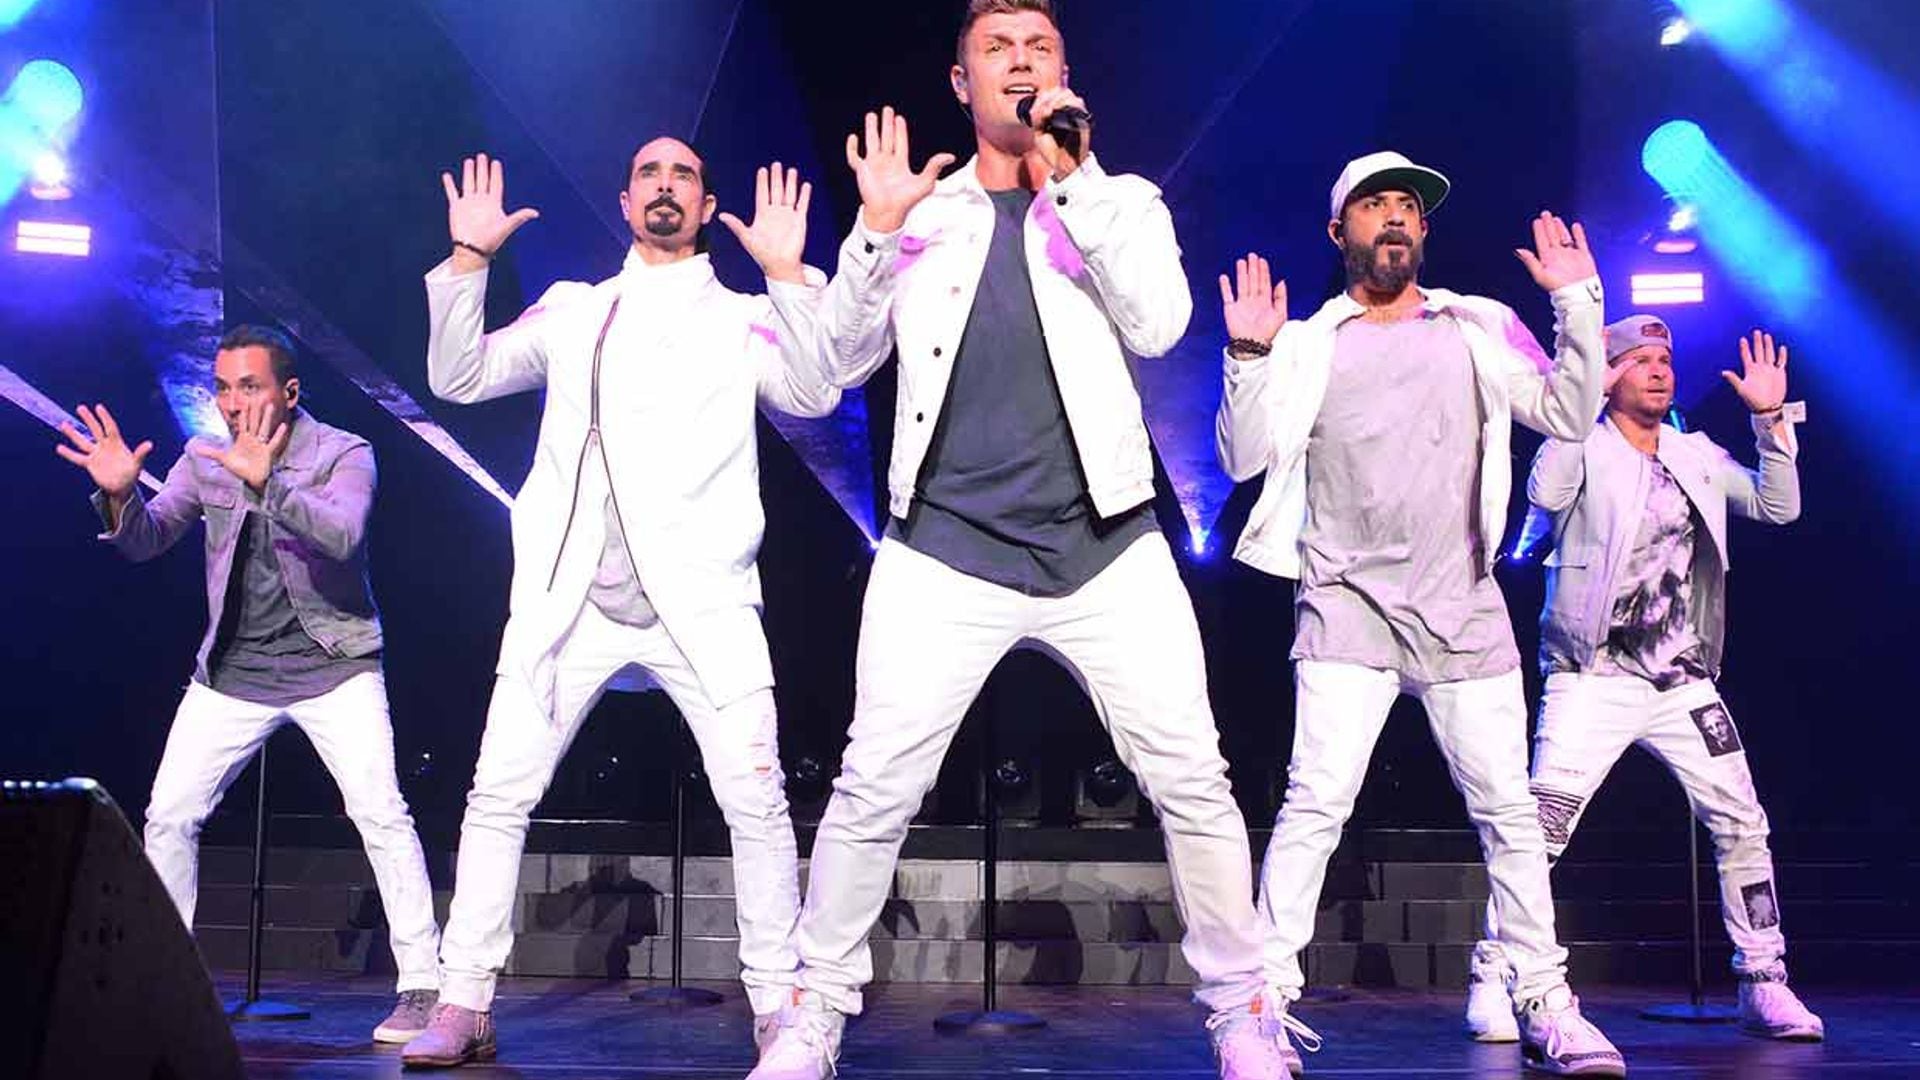 ¡Pura nostalgia! La foto de los Backstreet Boys con la que han celebrado sus 27 años en música